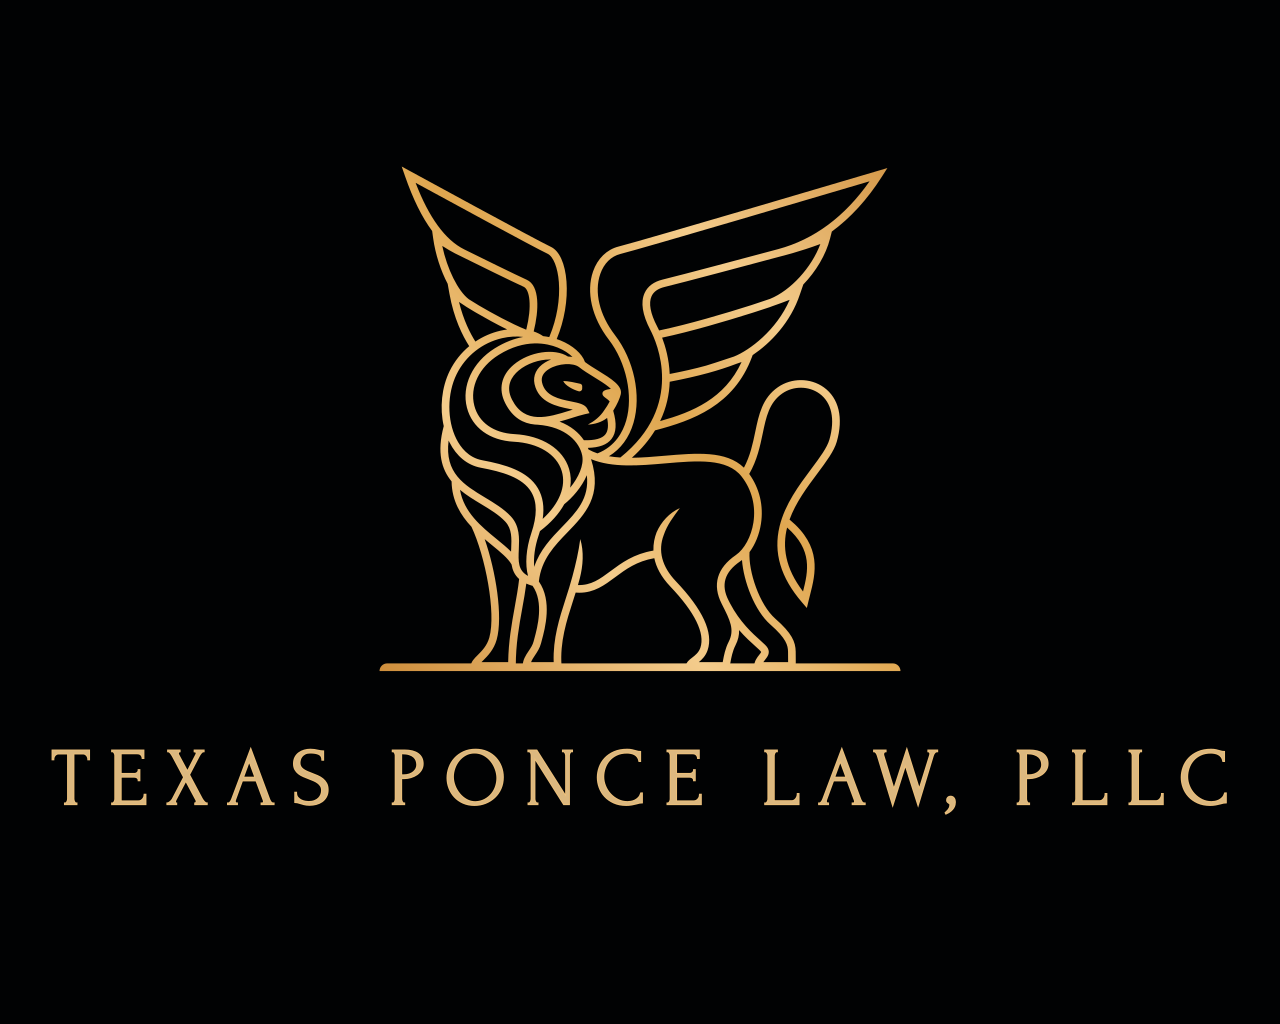 Texas Ponce Law, PLLC